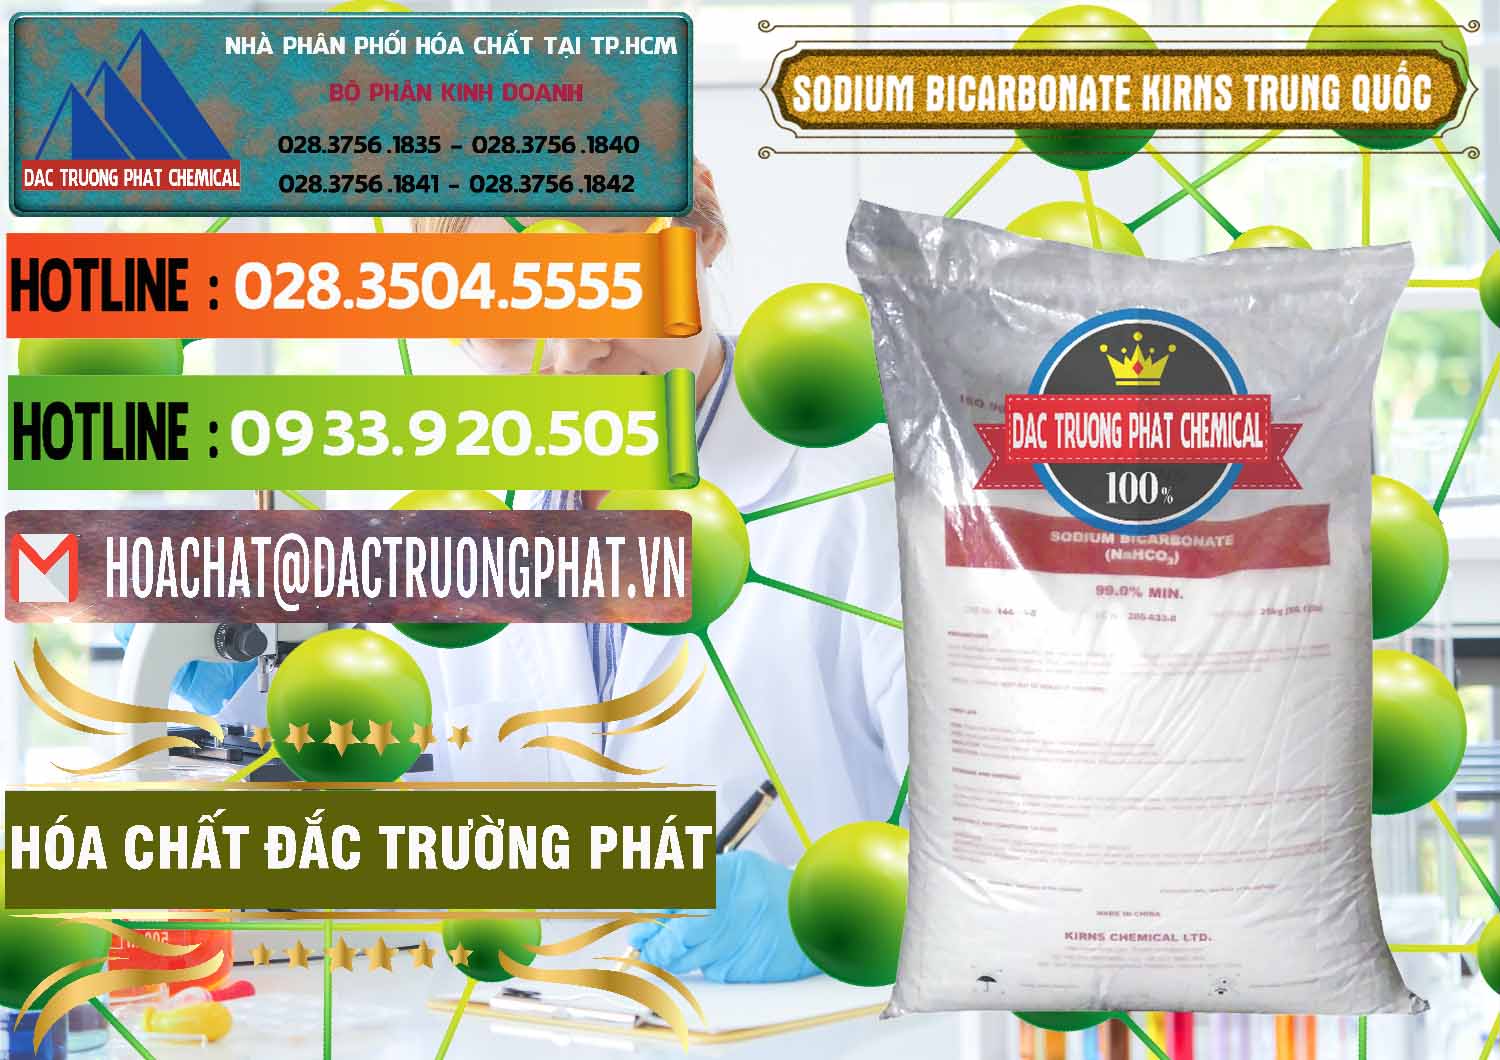 Cty nhập khẩu _ bán Sodium Bicarbonate – Bicar NaHCO3 Food Grade Kirns Trung Quốc - 0217 - Cty chuyên nhập khẩu - phân phối hóa chất tại TP.HCM - cungcaphoachat.com.vn